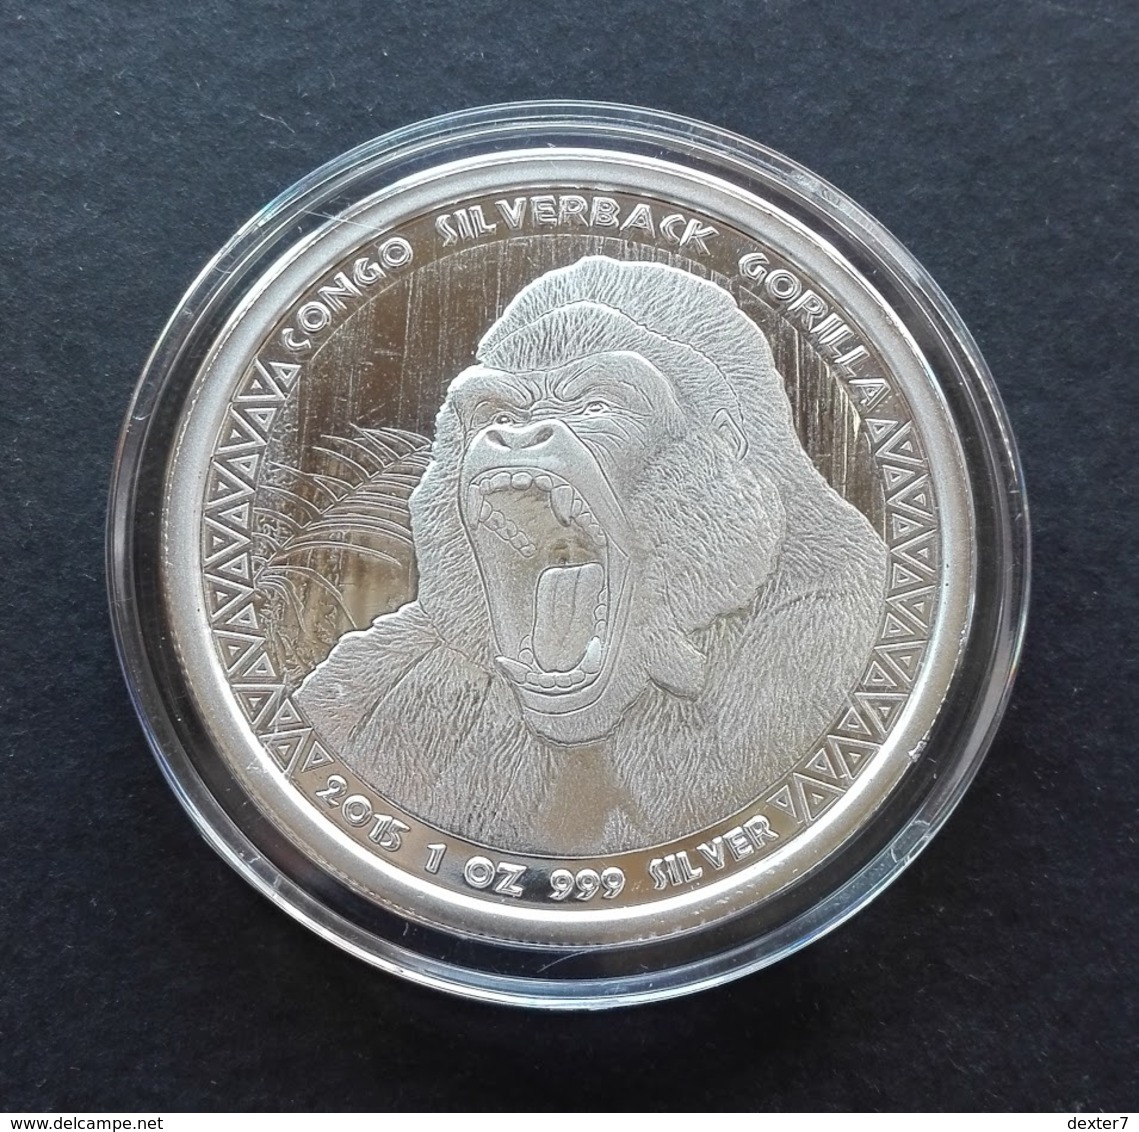 Congo, Gorilla 1 Oz 2015 Silver 999 Pure - 1 Oncia Argento Puro Bullion Scottsdale Mint - Congo (Democratic Republic 1998)